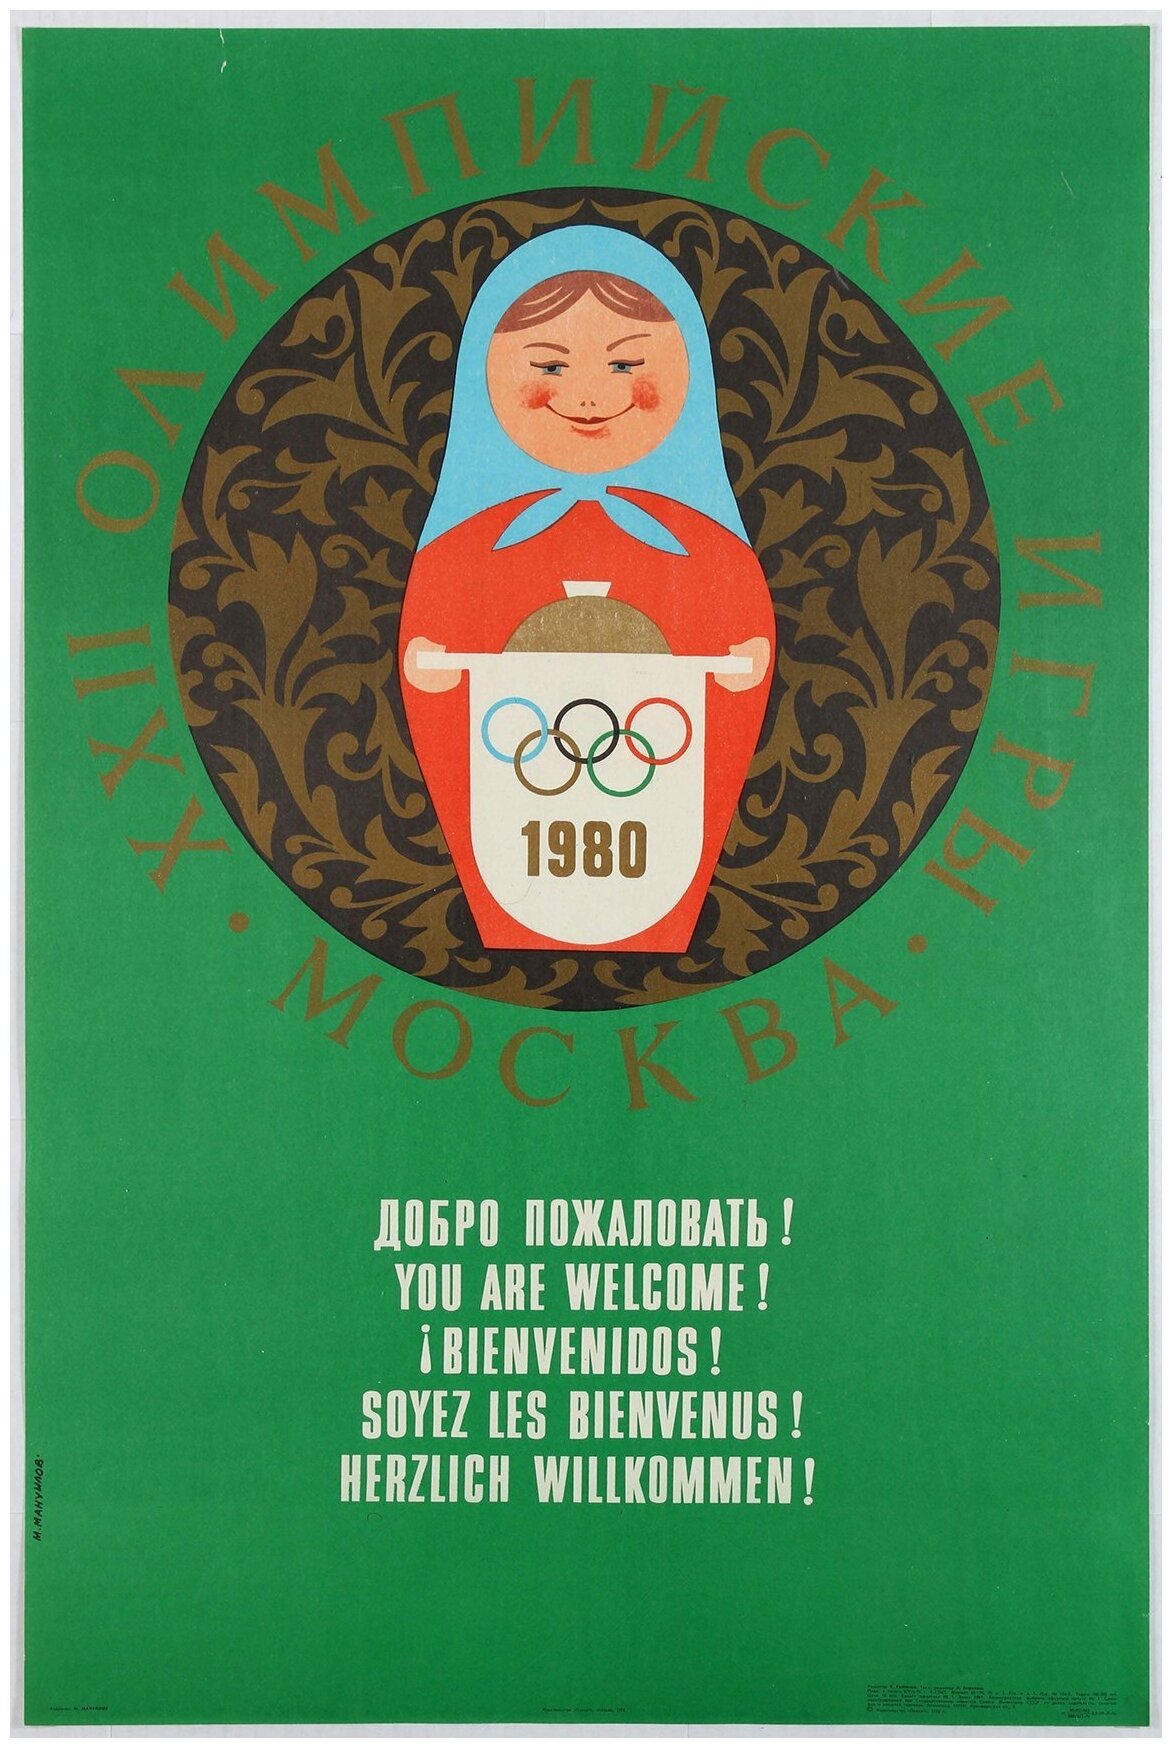 Постер / Плакат / Картина на холсте Олимпиада